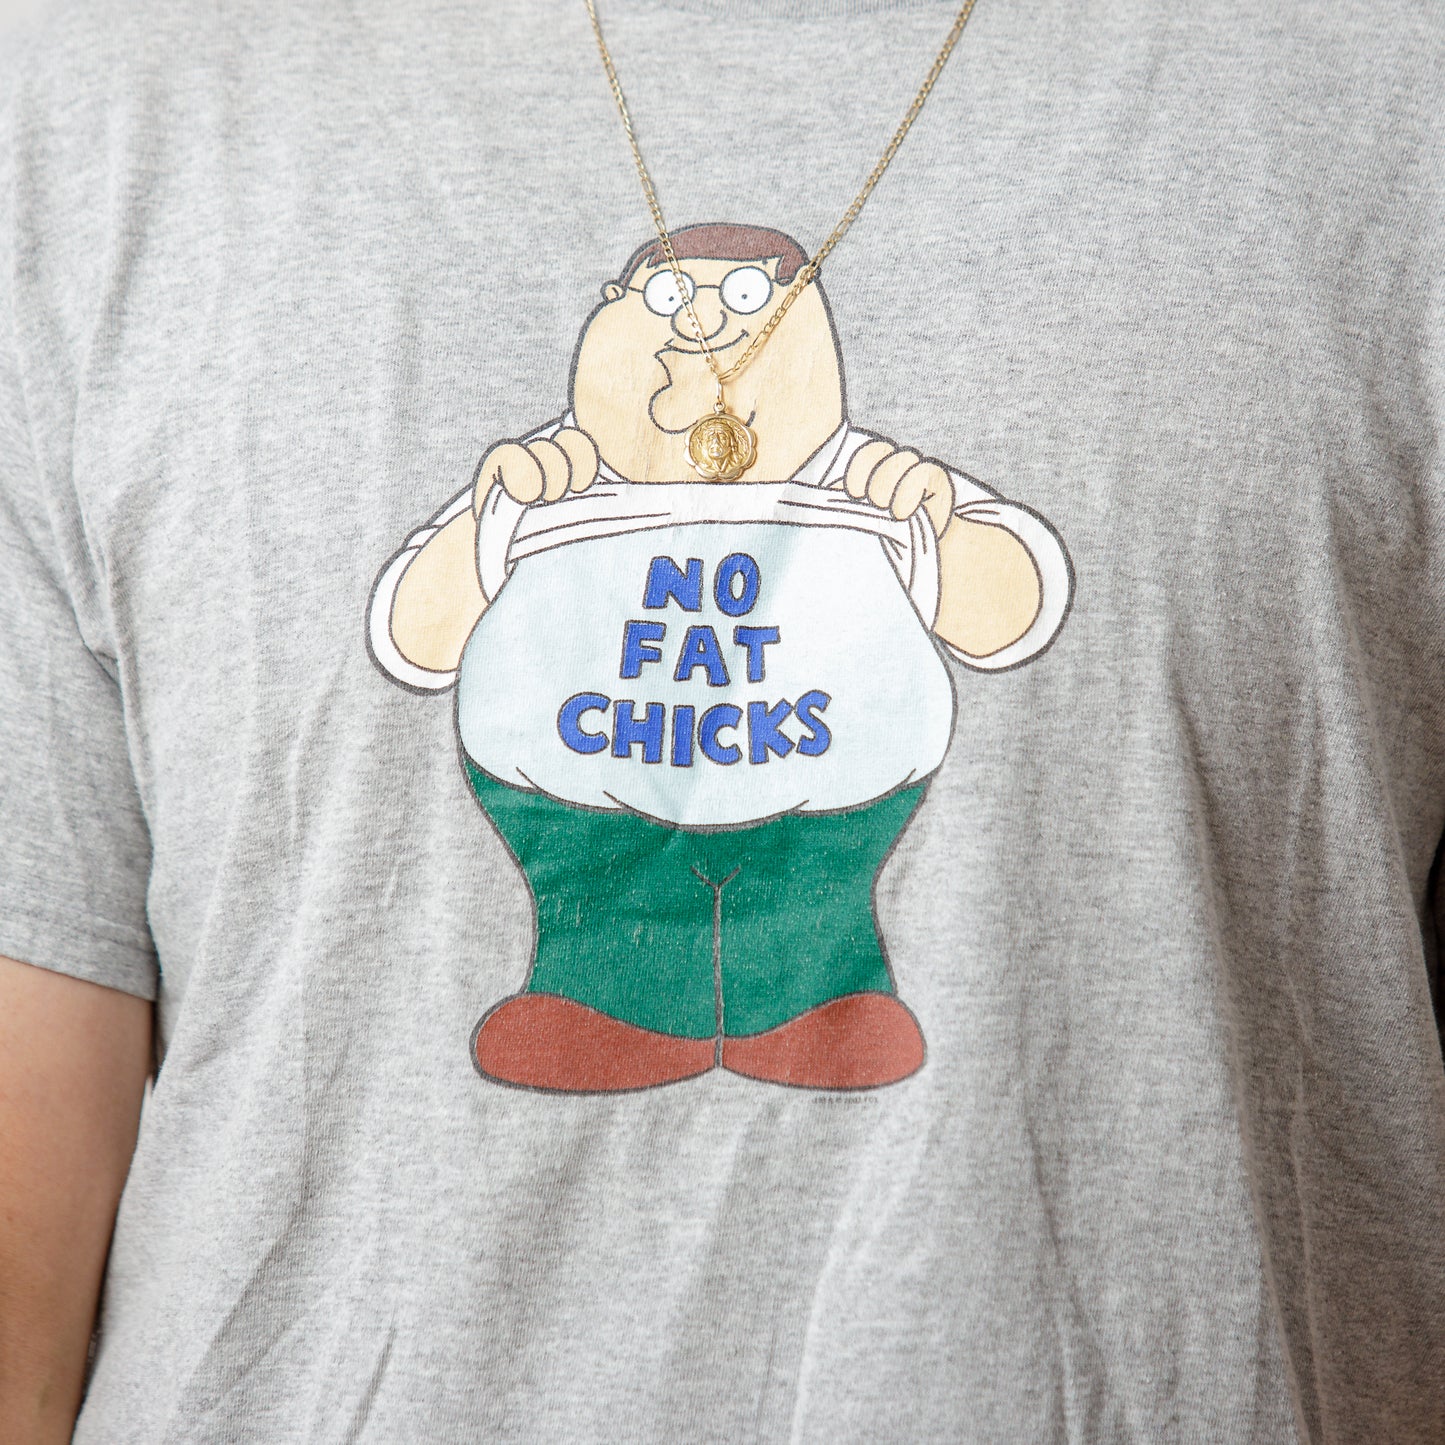 2003 Family Guy No Fat Chicks Tee